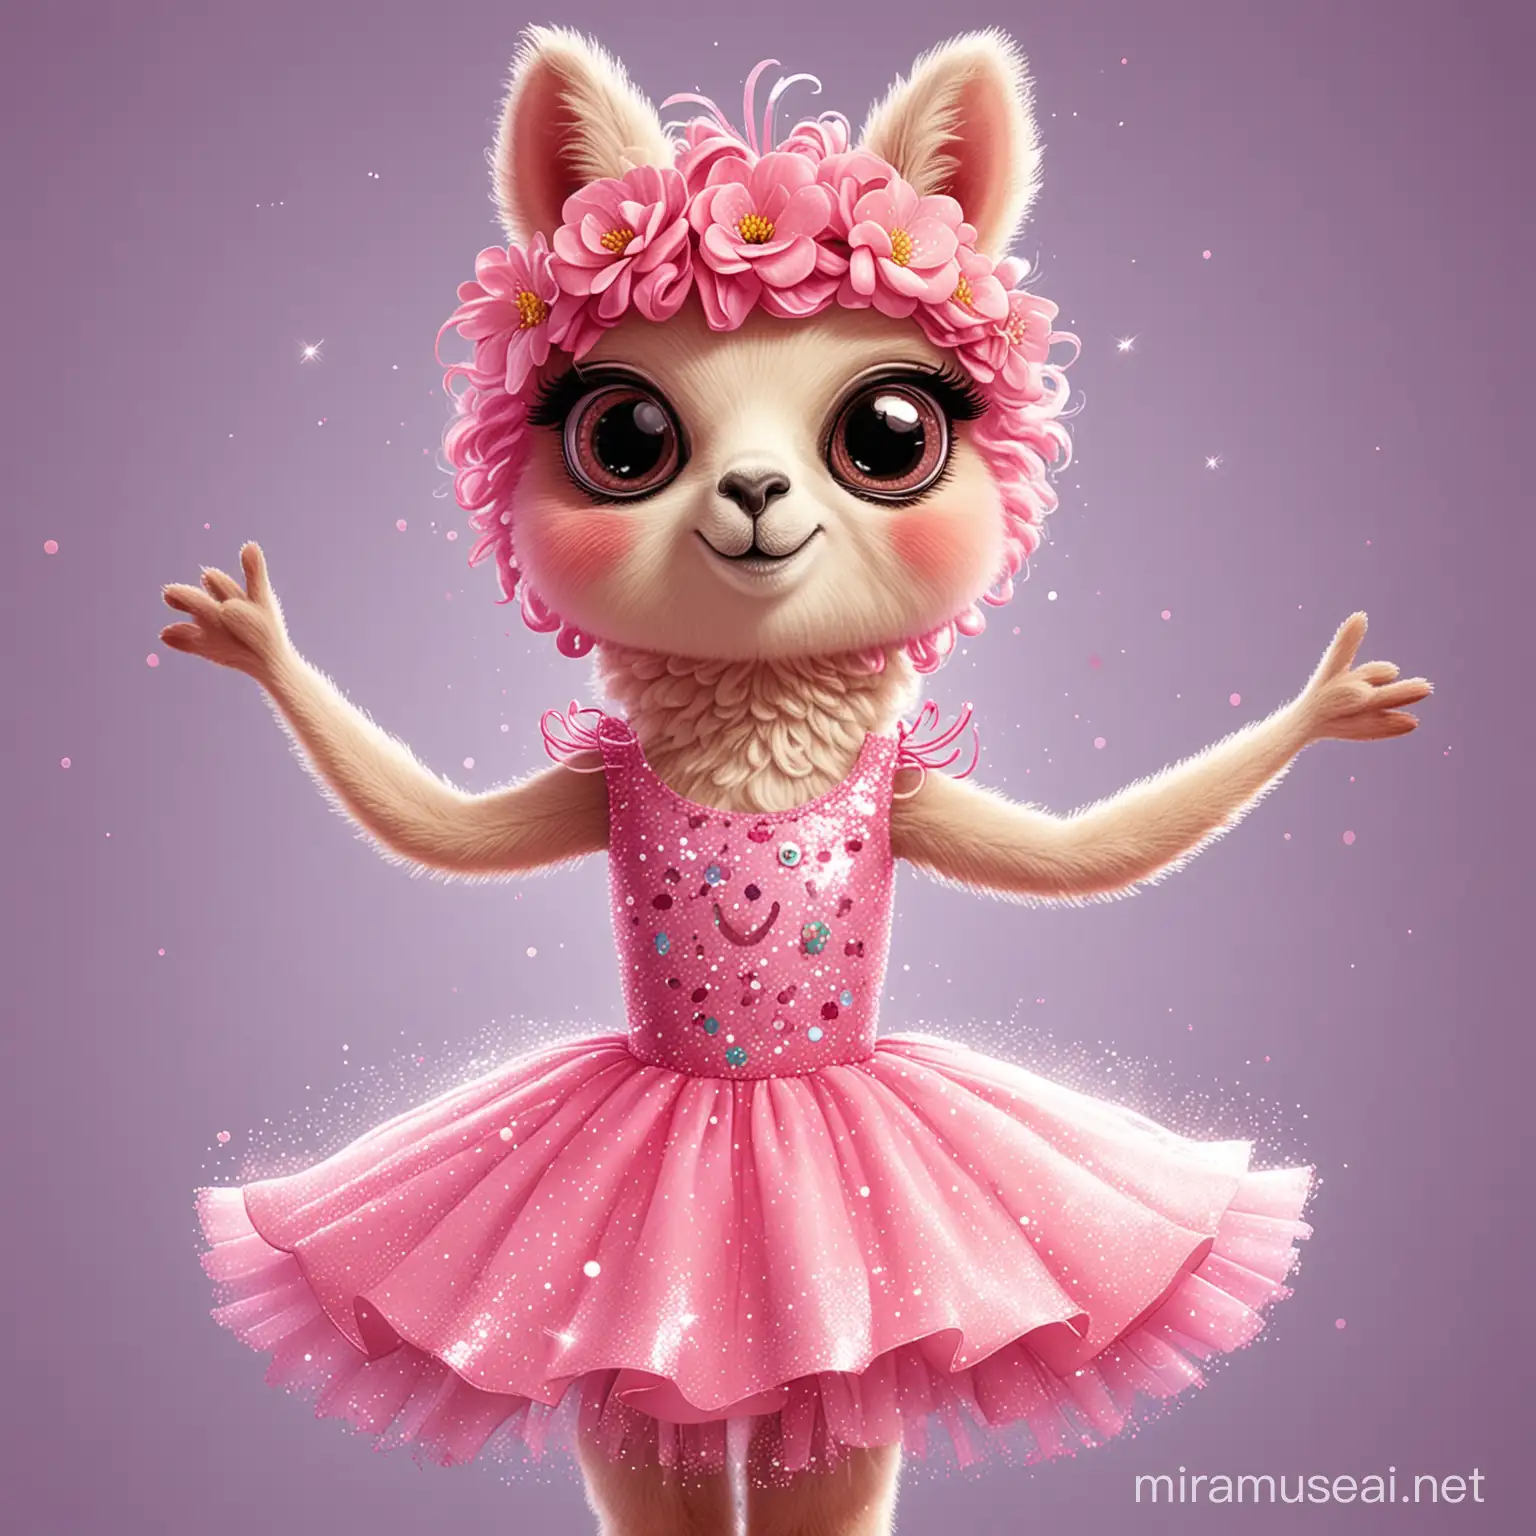 Llama animal,bailarina,color rosa, cartoon,vestido purpurina,ojos grandes,dibujo animado,alegre,colores brillantes